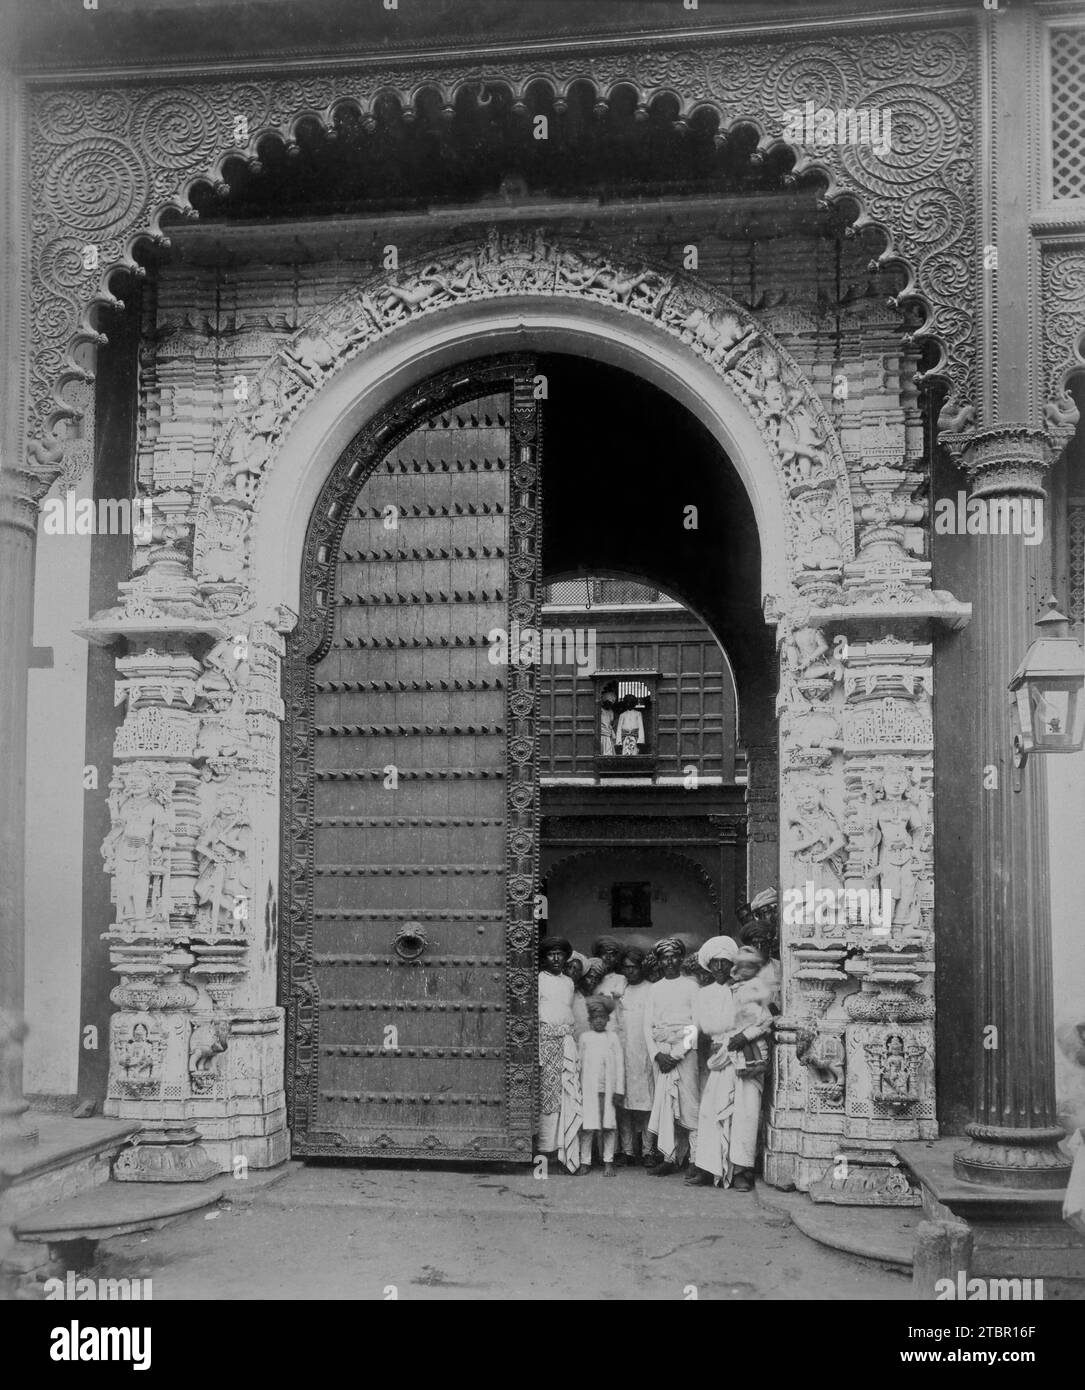 Vecchia Darbar Gateway; 1886 - 1889. Stampa argento albume. Parte di 'Bhavnagar' - Compendio fotografico. Vedute e studi architettonici di Bhavnagar, India Foto Stock